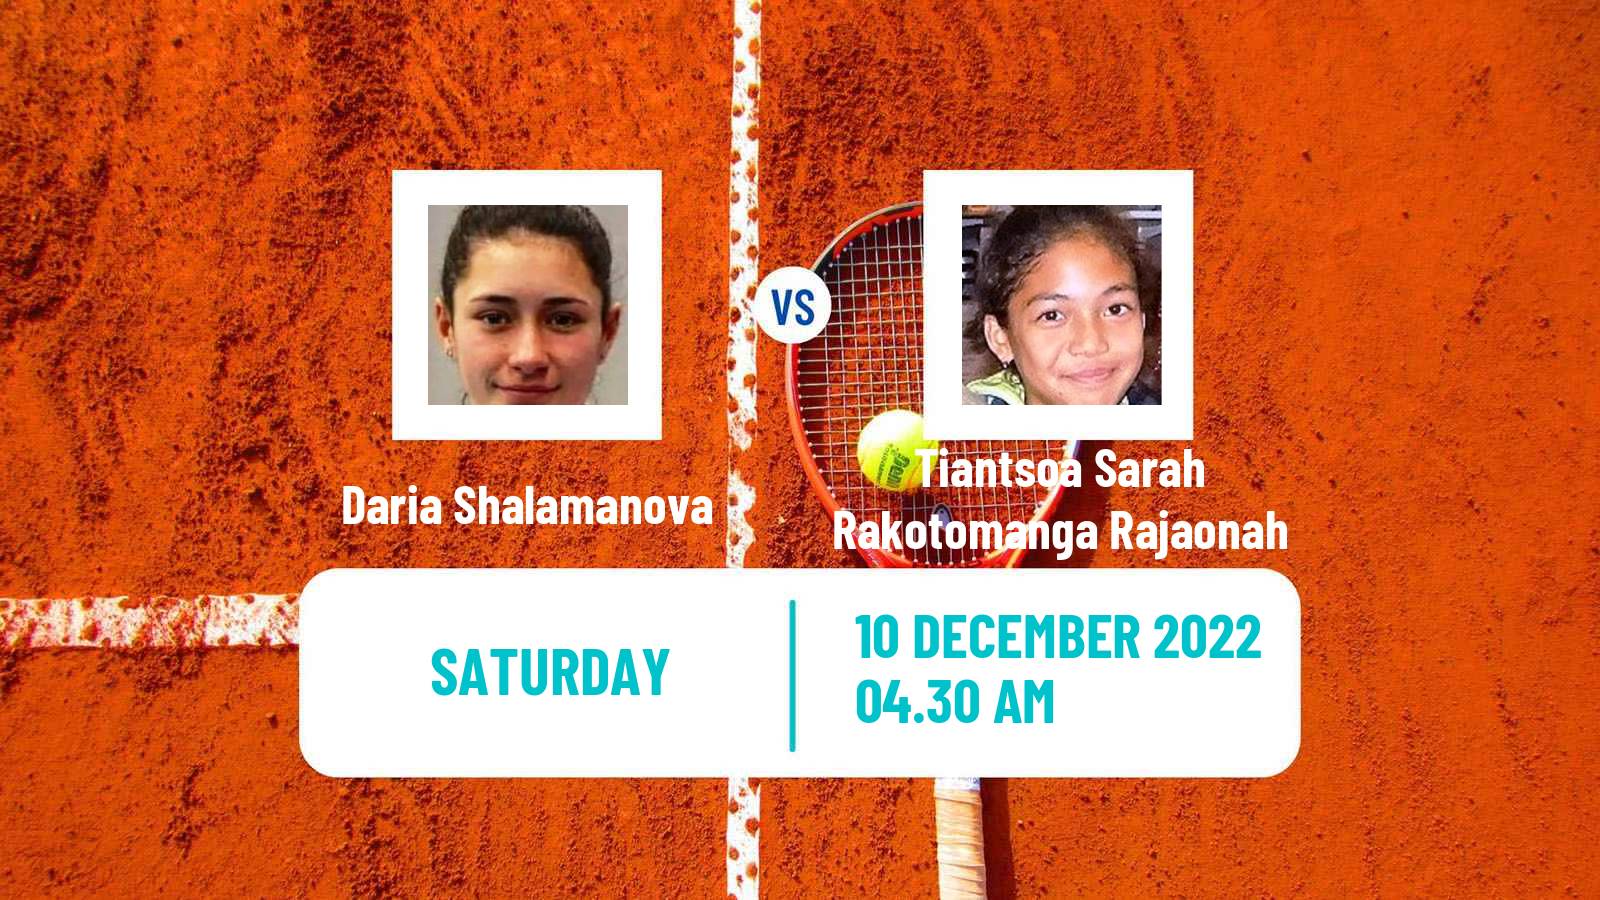 Tennis ITF Tournaments Daria Shalamanova - Tiantsoa Sarah Rakotomanga Rajaonah